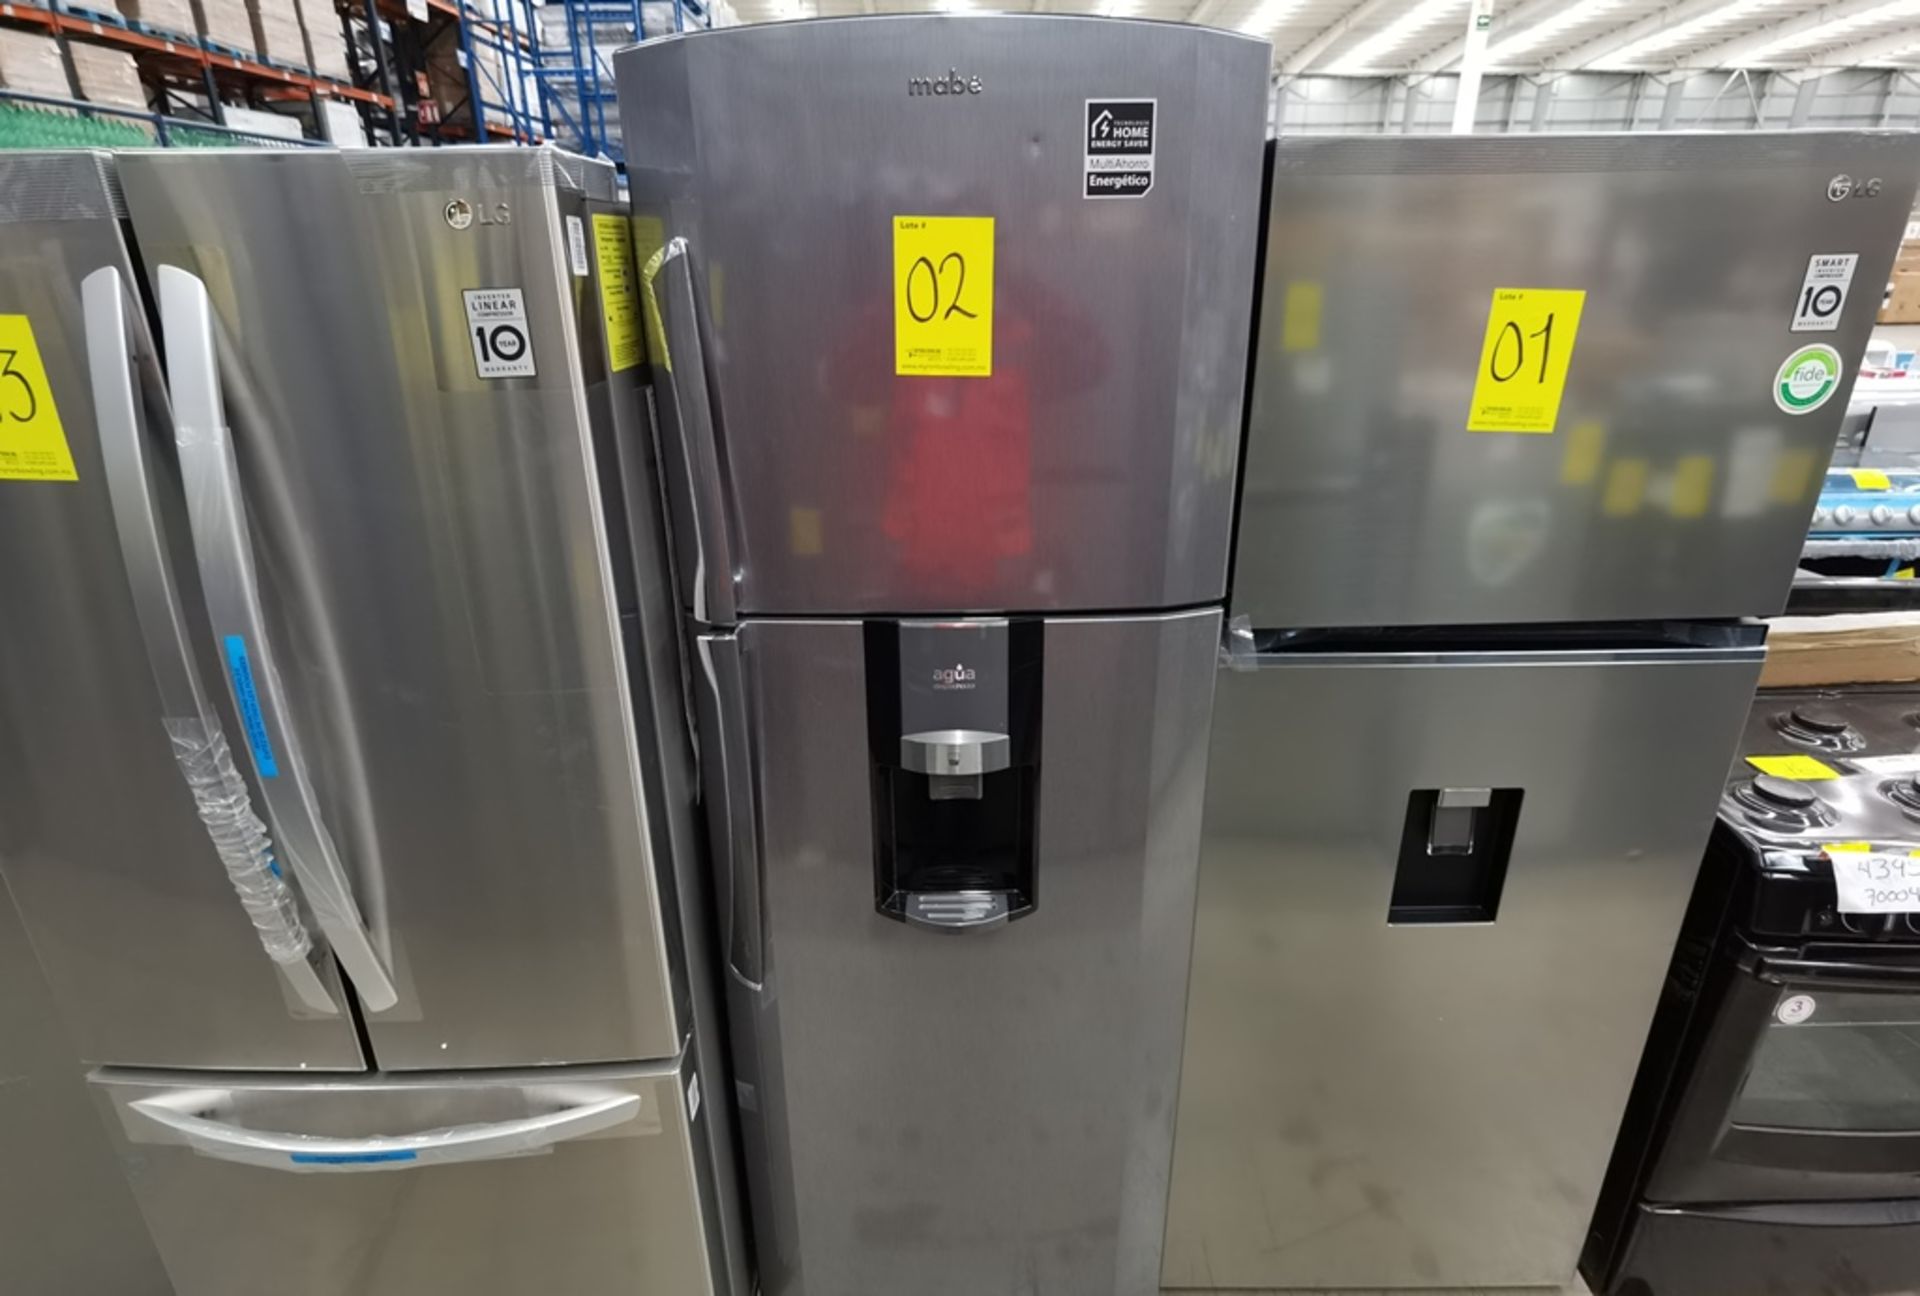 Lote De 2 Refrigeradores Contiene: 1 Refrigerador Marca Mabe, Modelo RMT400RY, Serie 2206B407247, C